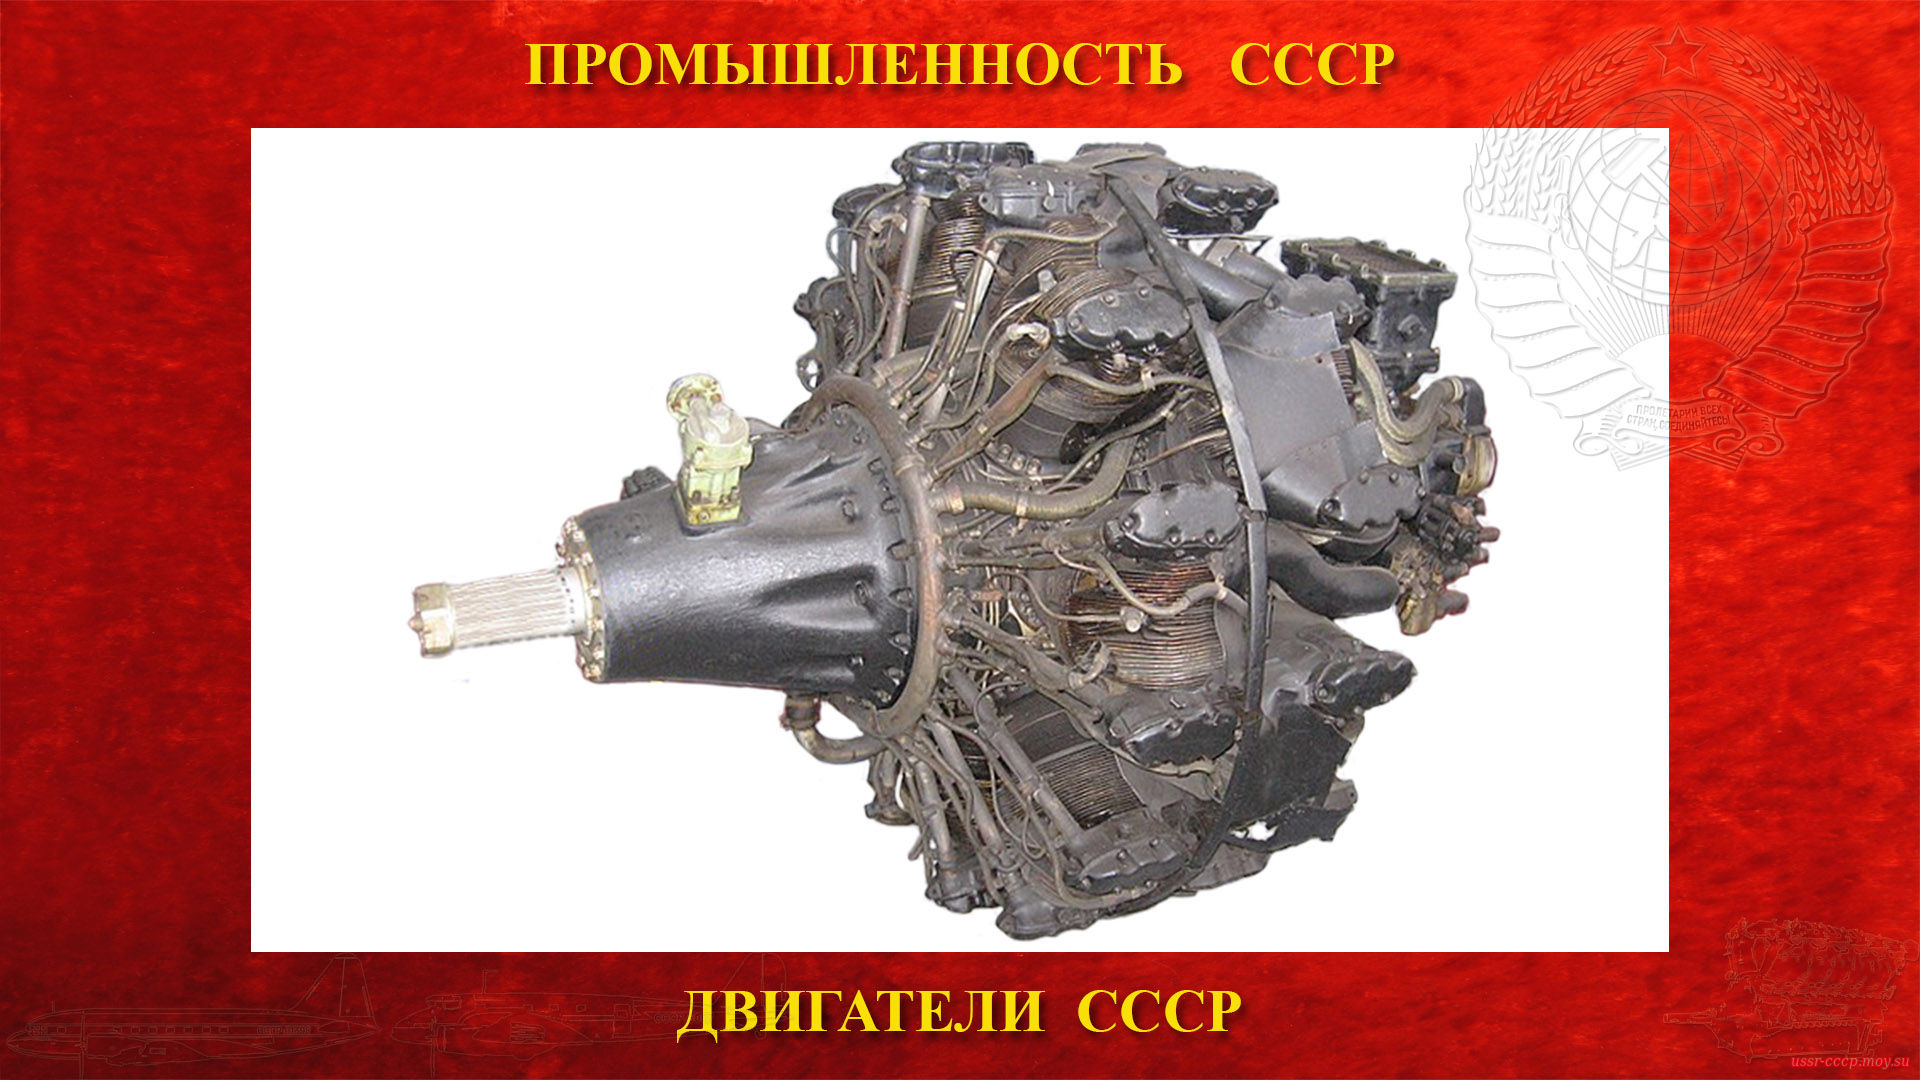 АШ-82ФН — Советский авиационный поршневой двигатель СССР (повествование)